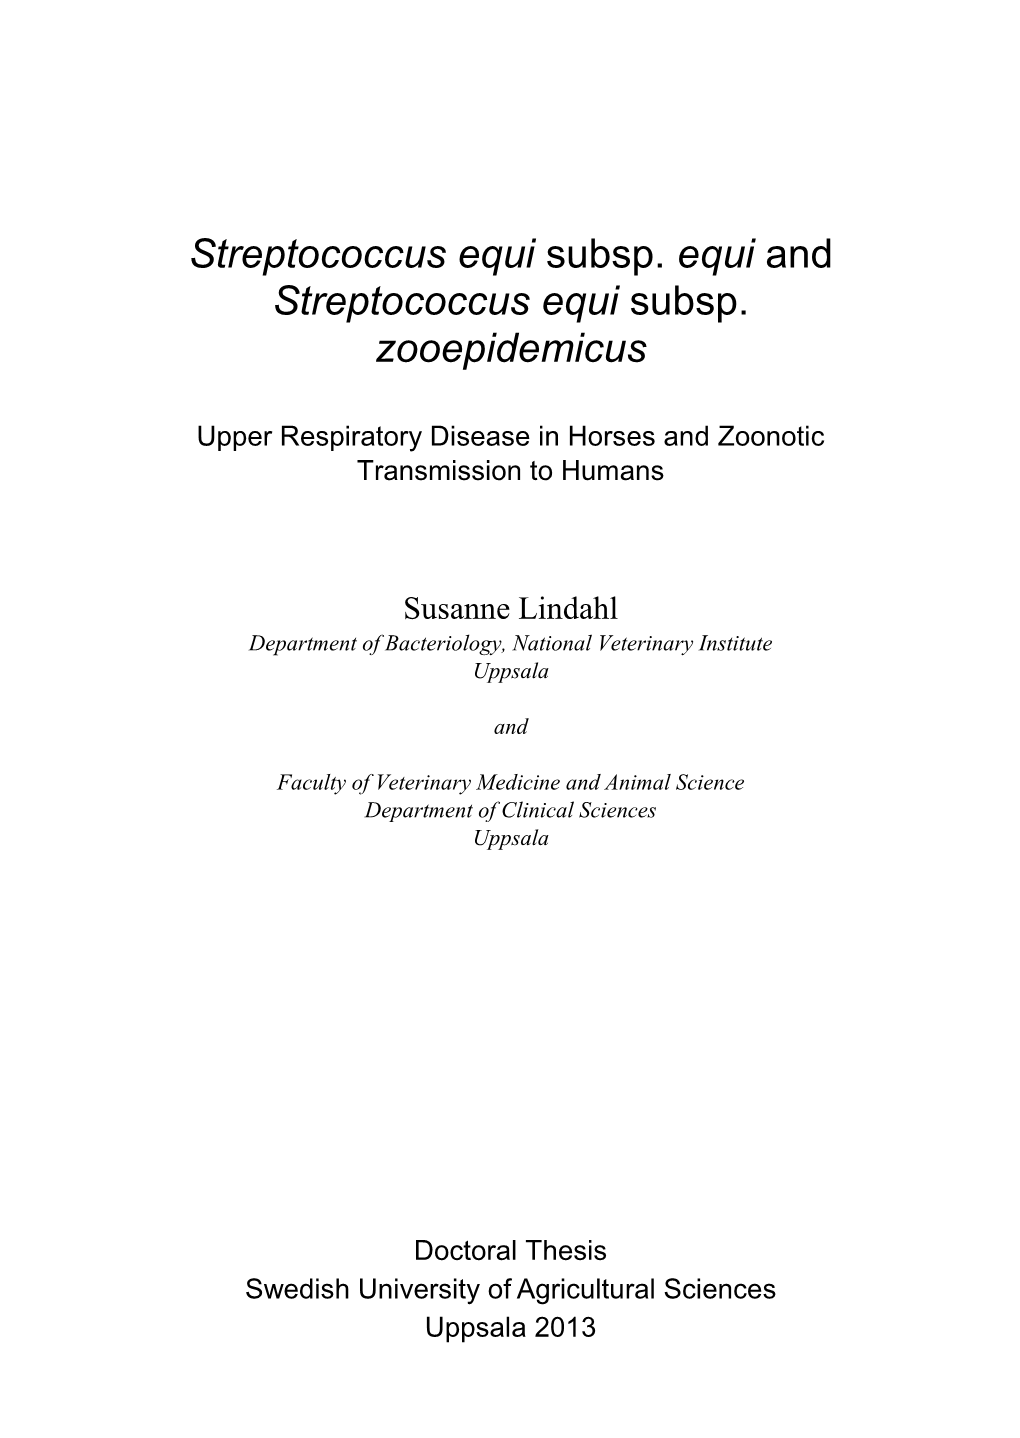 Streptococcus Equi Subsp